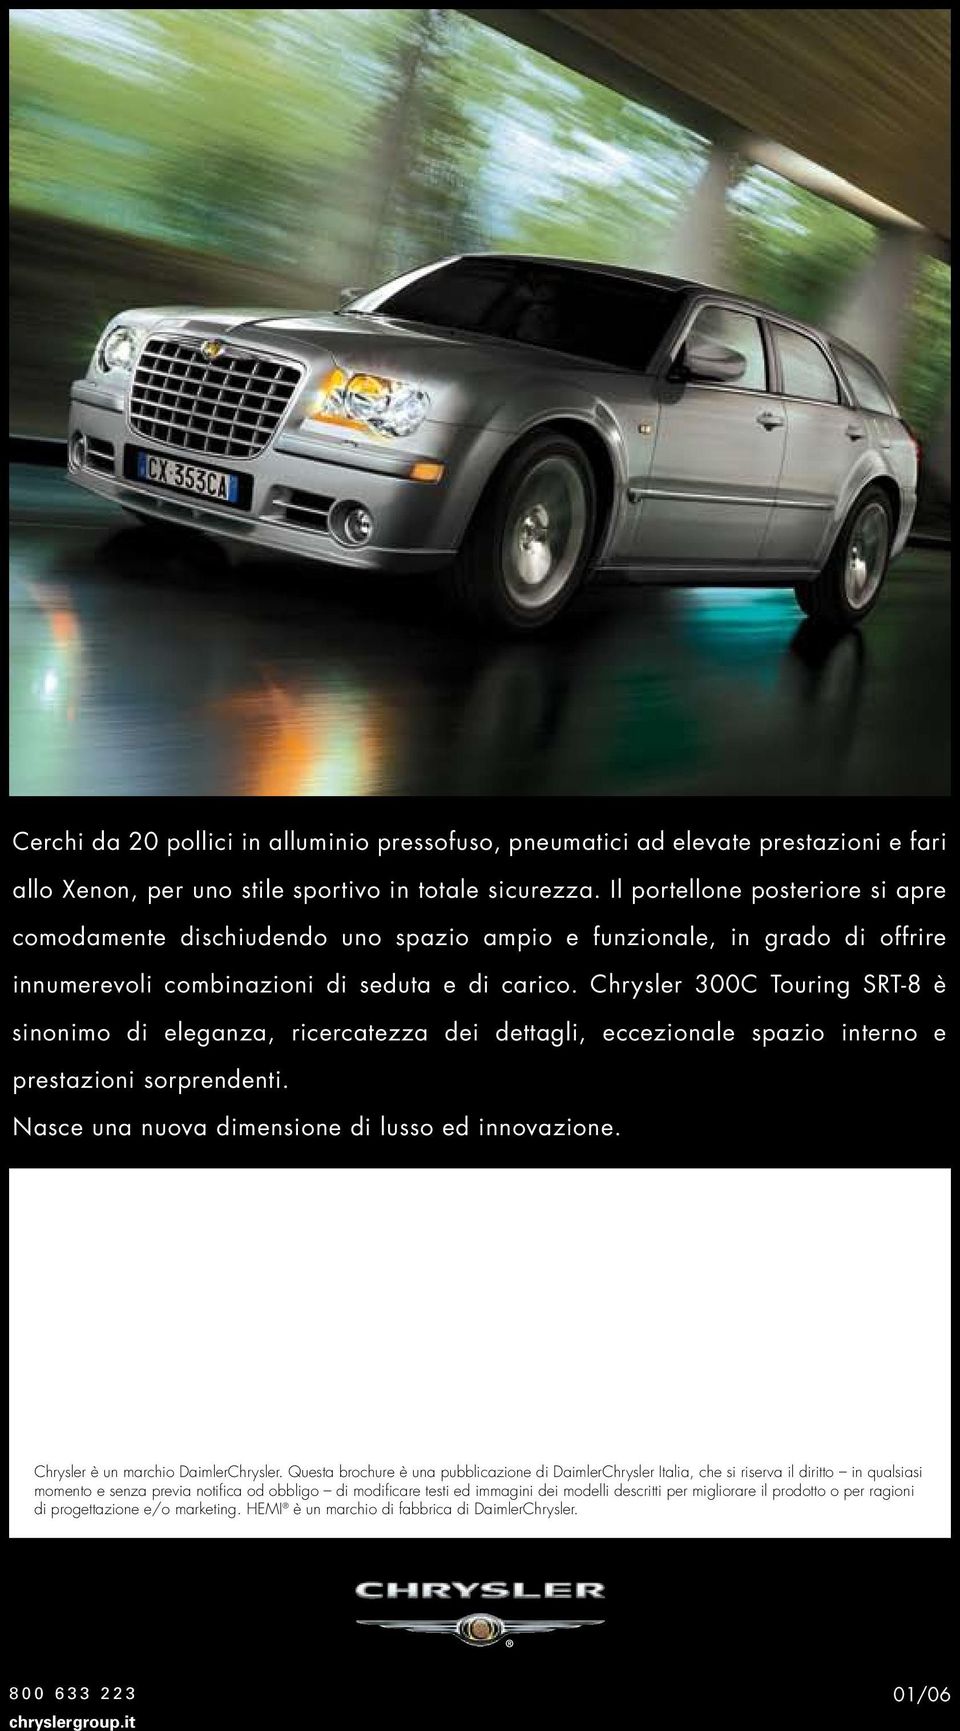 Chrysler 300C Touring SRT-8 è sinonimo di eleganza, ricercatezza dei dettagli, eccezionale spazio interno e prestazioni sorprendenti. Nasce una nuova dimensione di lusso ed innovazione.